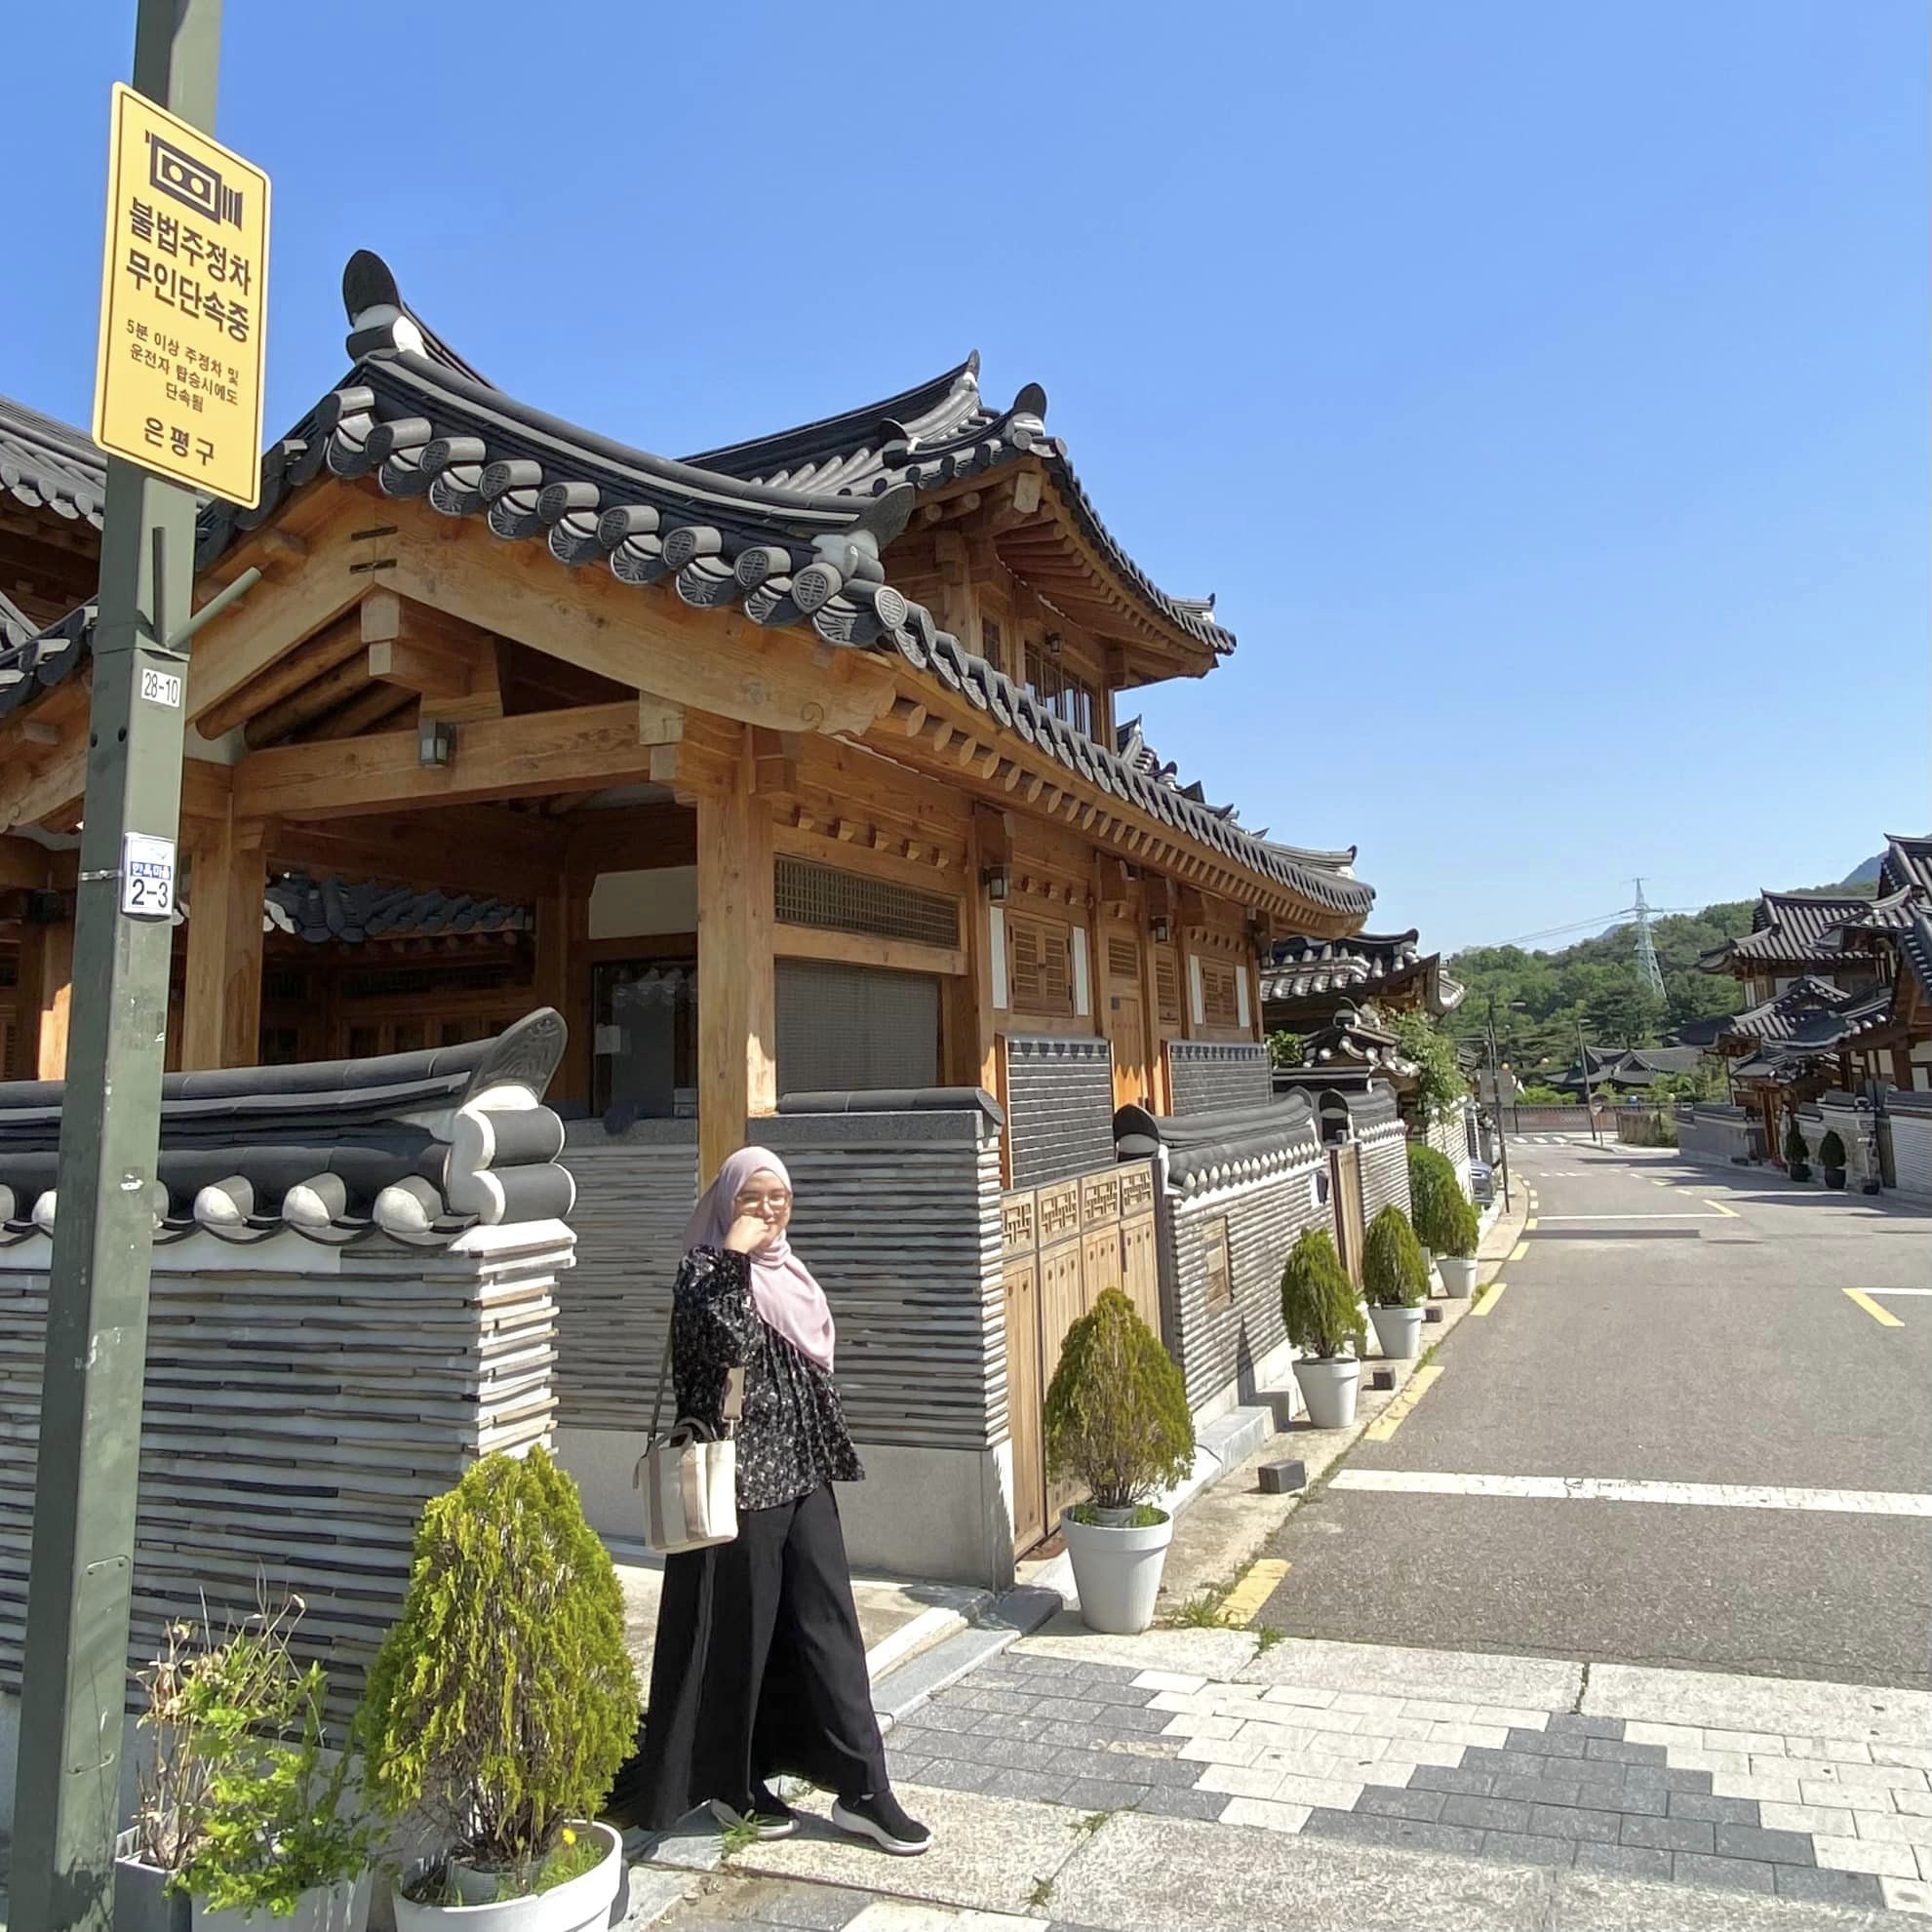 Itinenari Penuh Percutian Ke Korea Bersama Suami, Ini Tempat Wajib Singgah